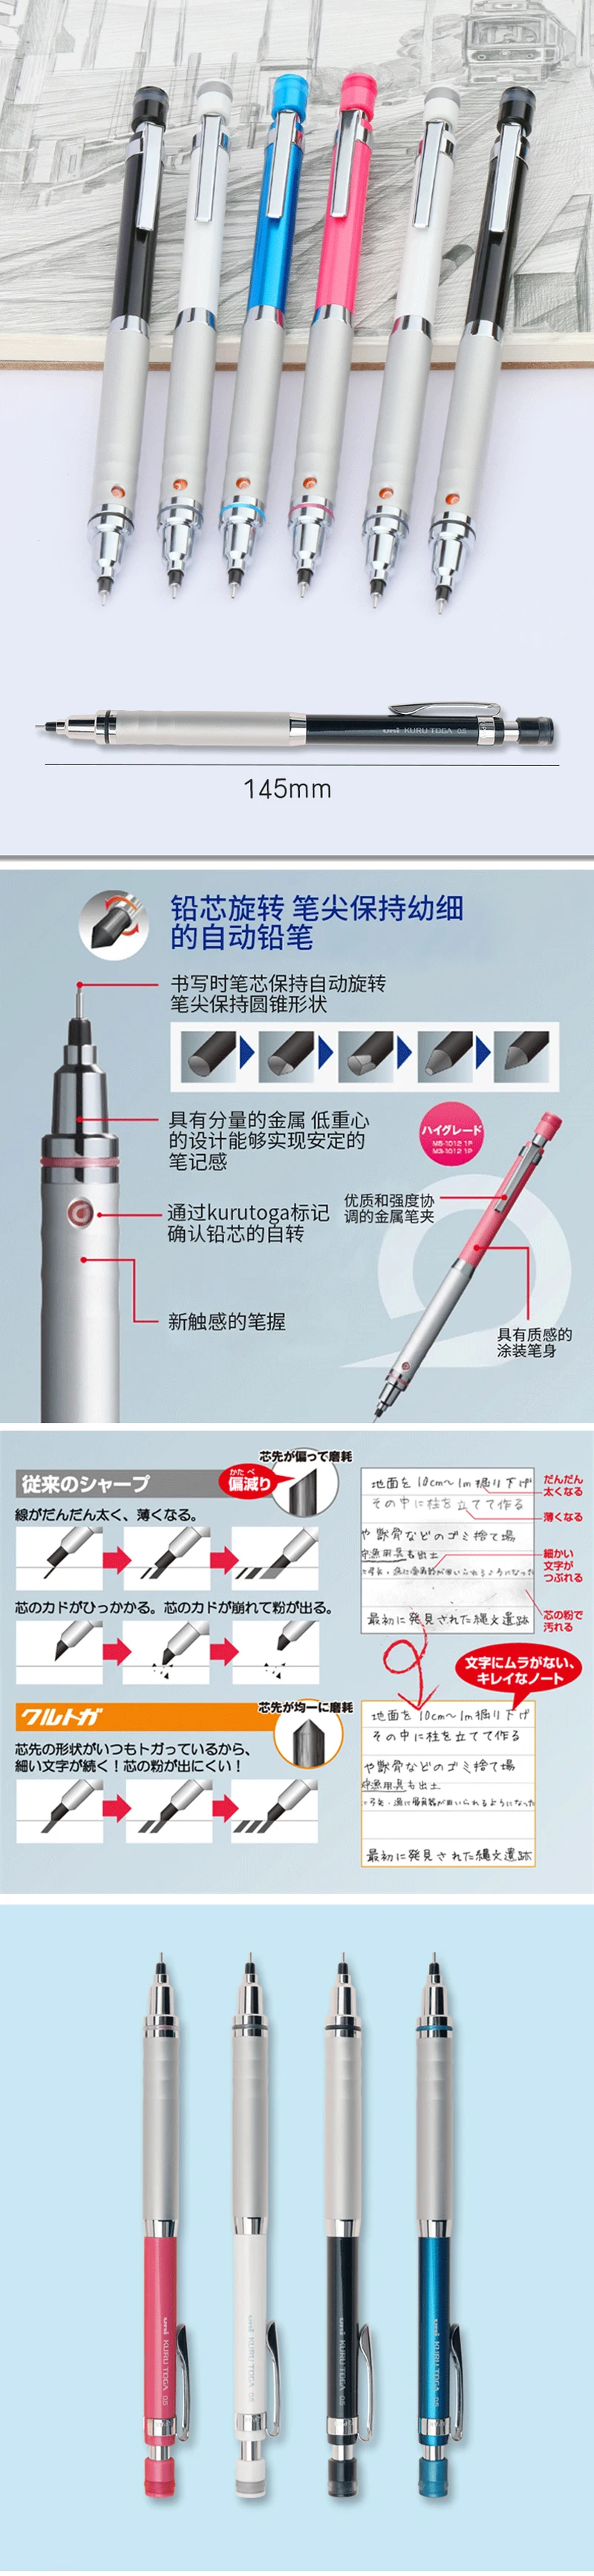 Один кусок Uni M5-1012 механические карандаши Kuru Toga высокого класса Авто свинцовый вращающийся карандаш-0,5 мм